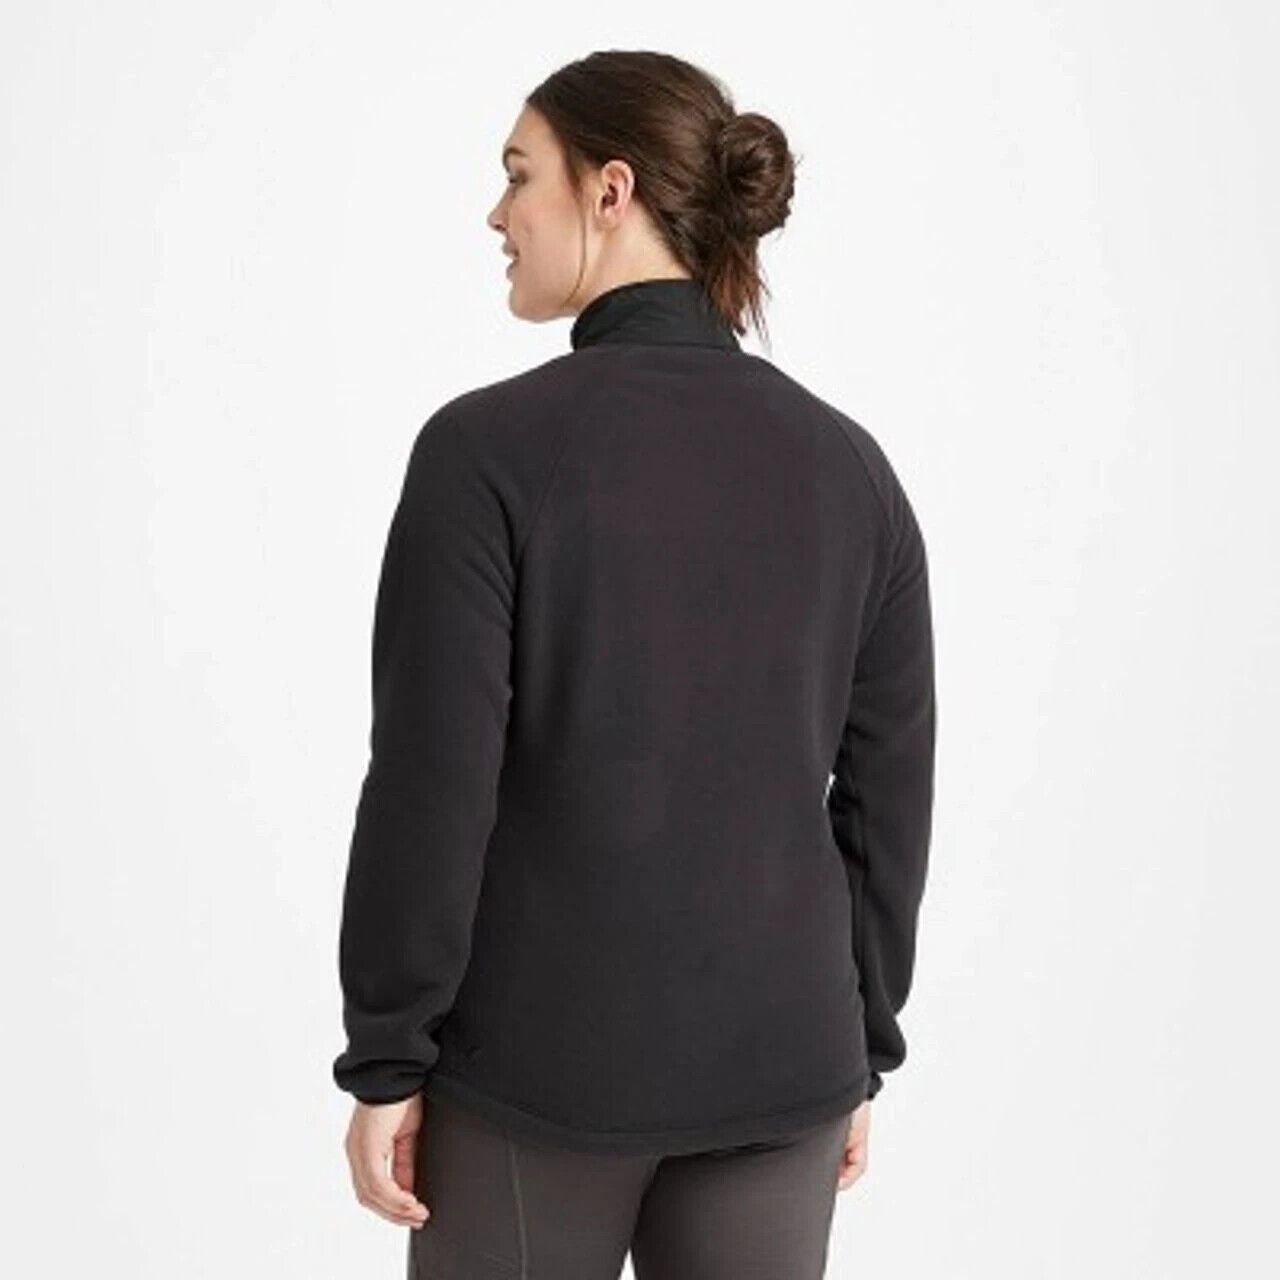 Women's Polartec Fleece Jacket  All in Motion Black XS